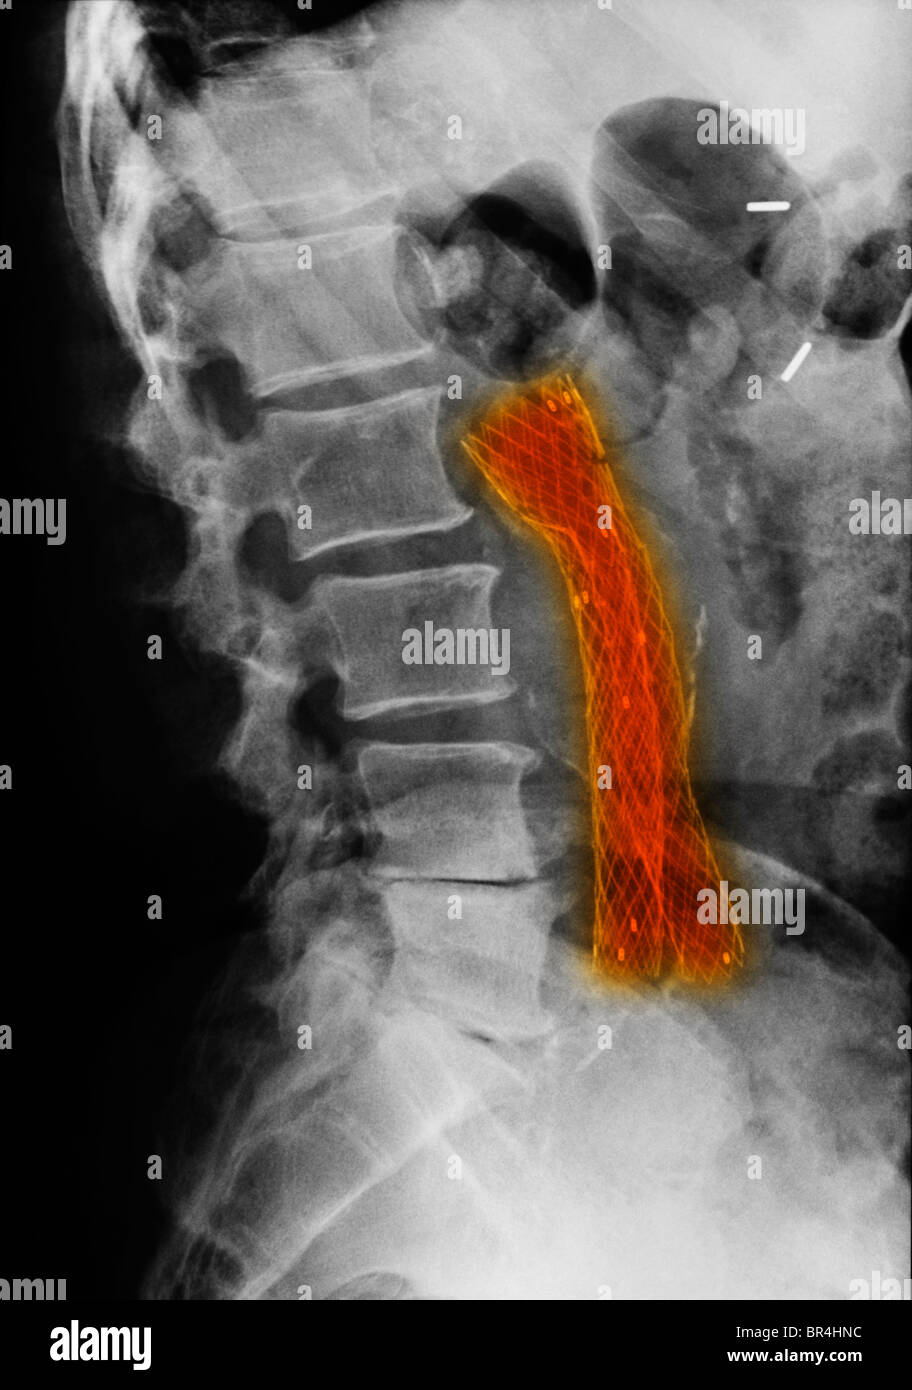 X-ray mostrando un injerto de derivación aortoiliaca malla Foto de stock